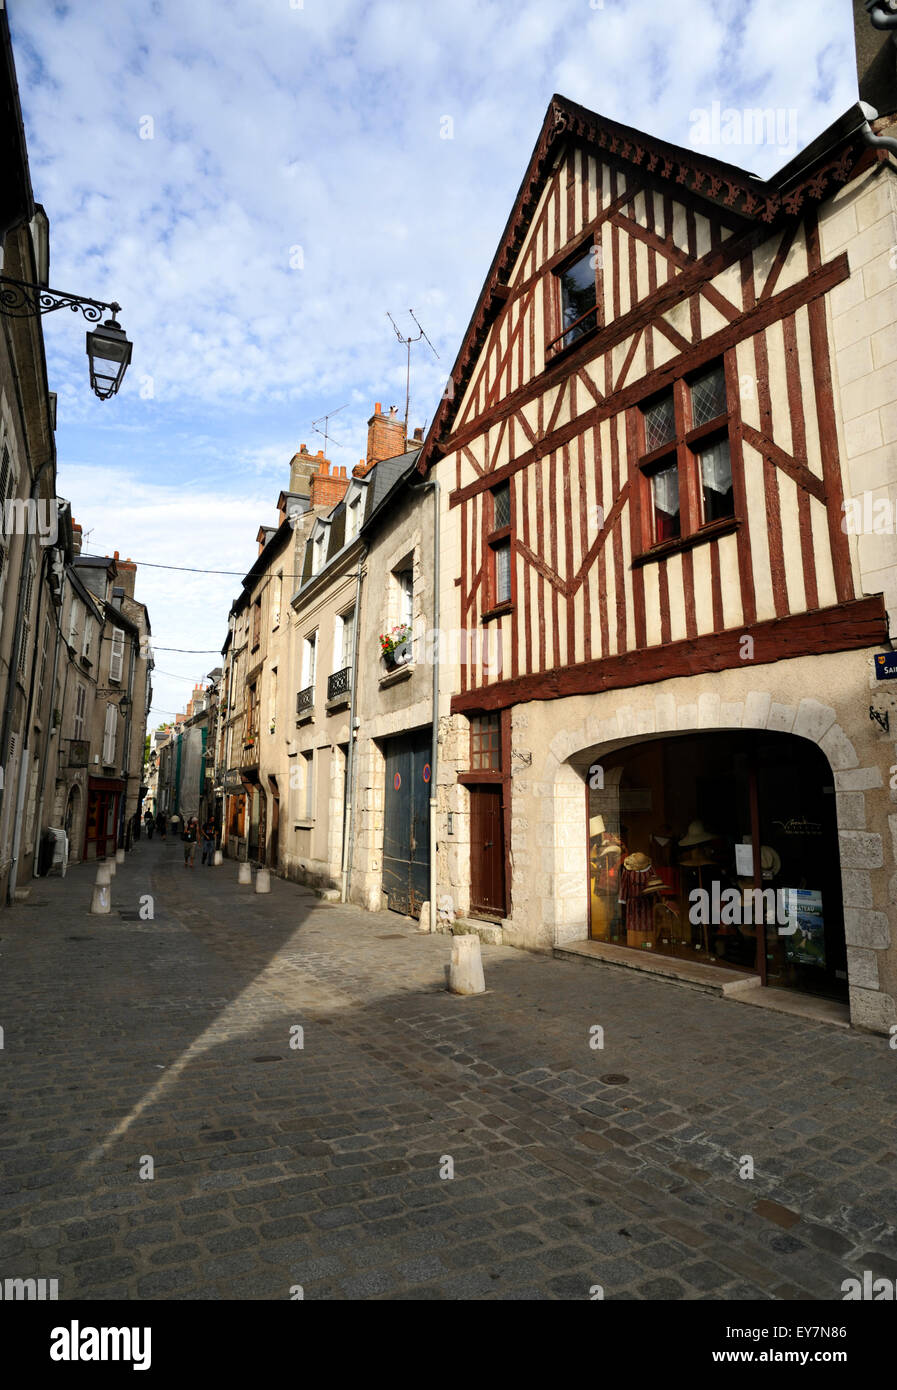 France, Vallée de la Loire, Blois, rue Saint-Lubin, rue de la vieille ville Banque D'Images